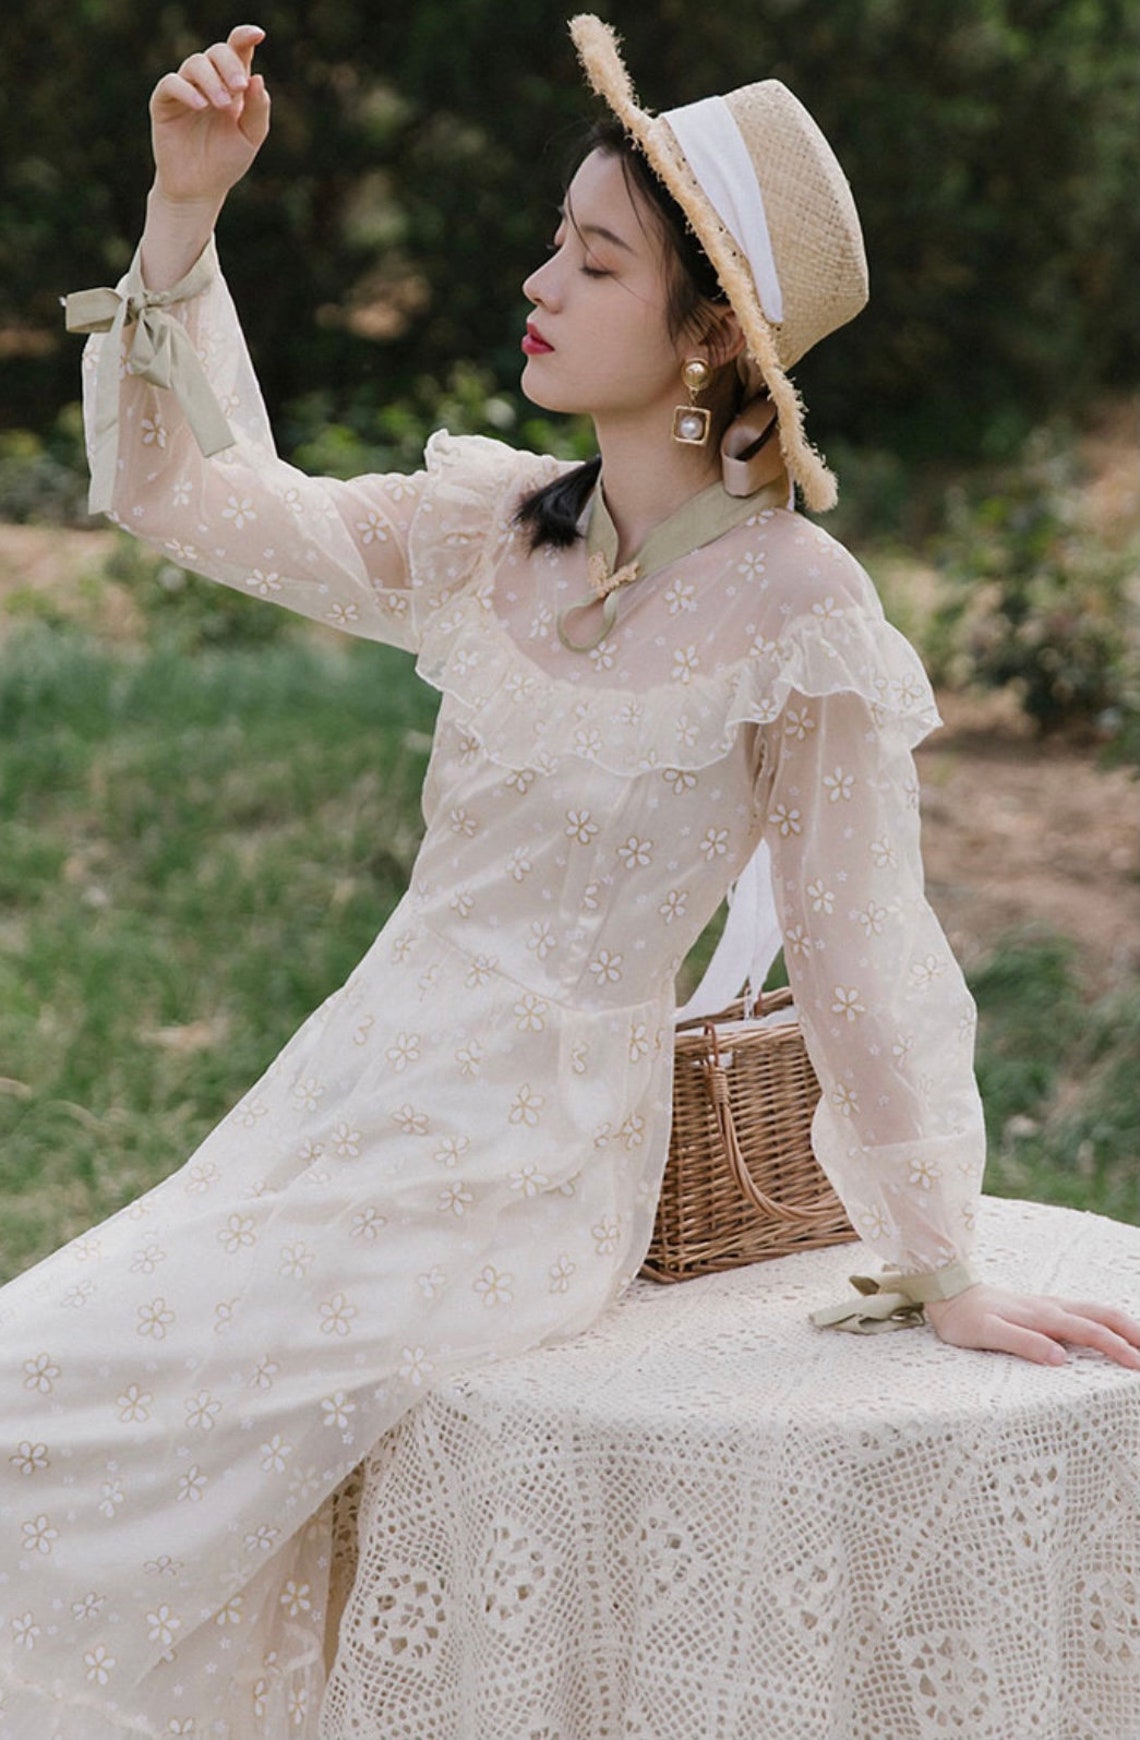 Fairy Dress-Princess Dress-Cottage Core Dress-Vintage Lace | Etsy